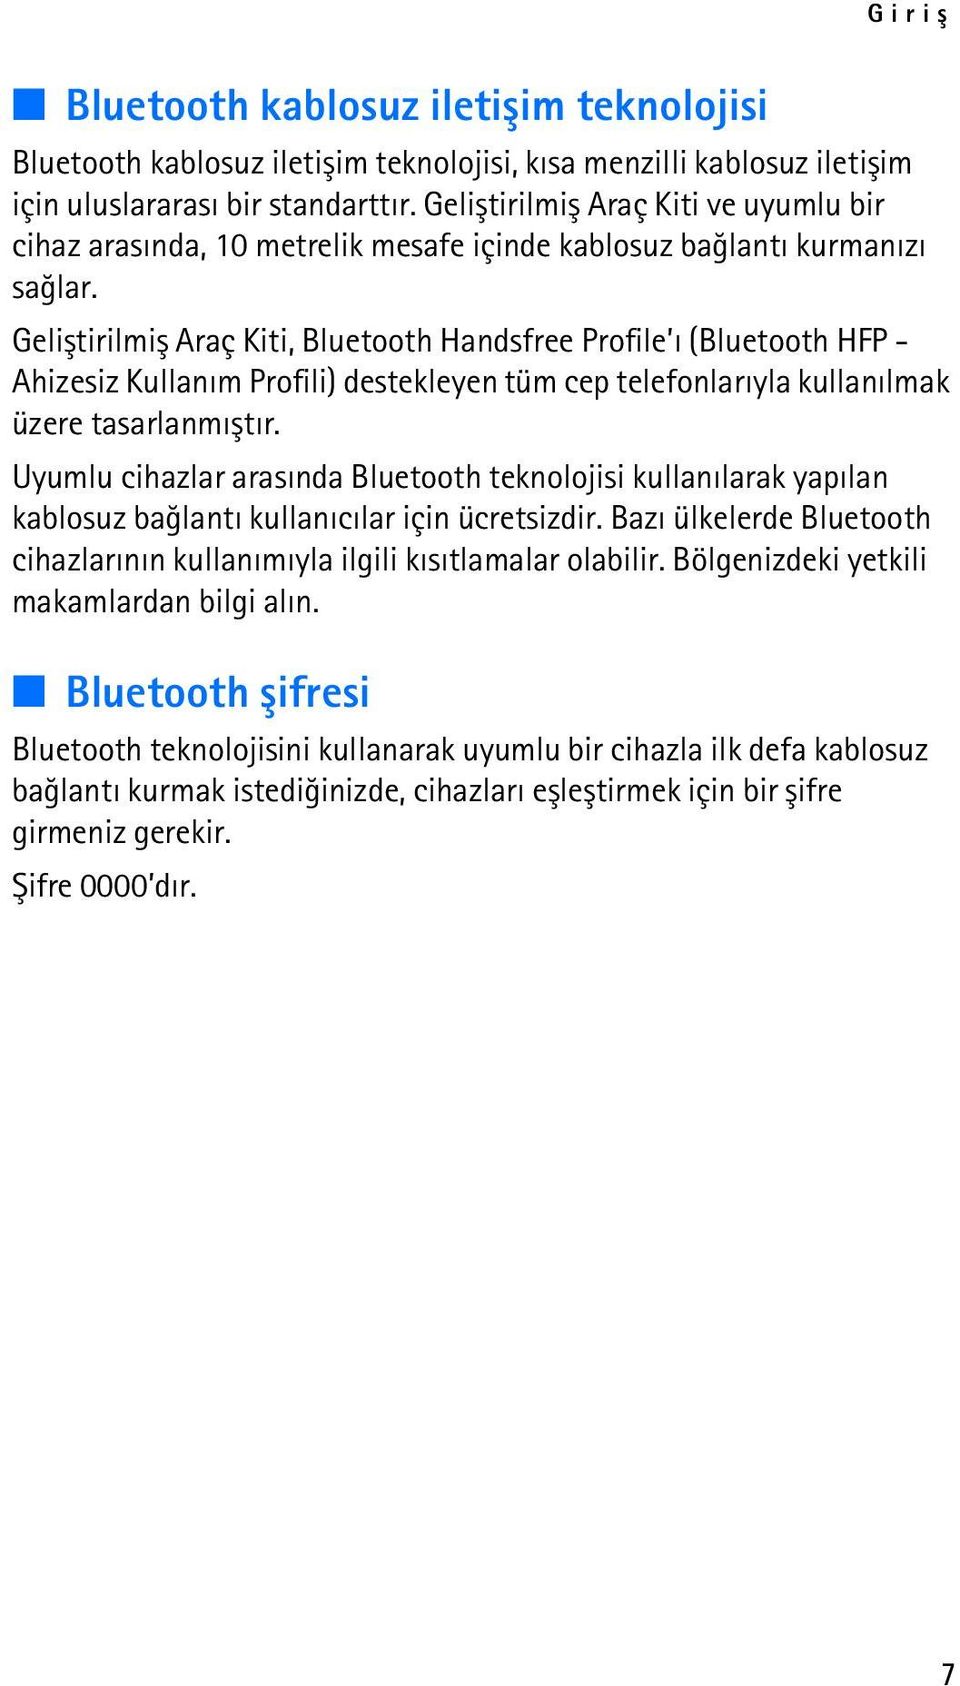 Geliþtirilmiþ Araç Kiti, Bluetooth Handsfree Profile ý (Bluetooth HFP - Ahizesiz Kullaným Profili) destekleyen tüm cep telefonlarýyla kullanýlmak üzere tasarlanmýþtýr.